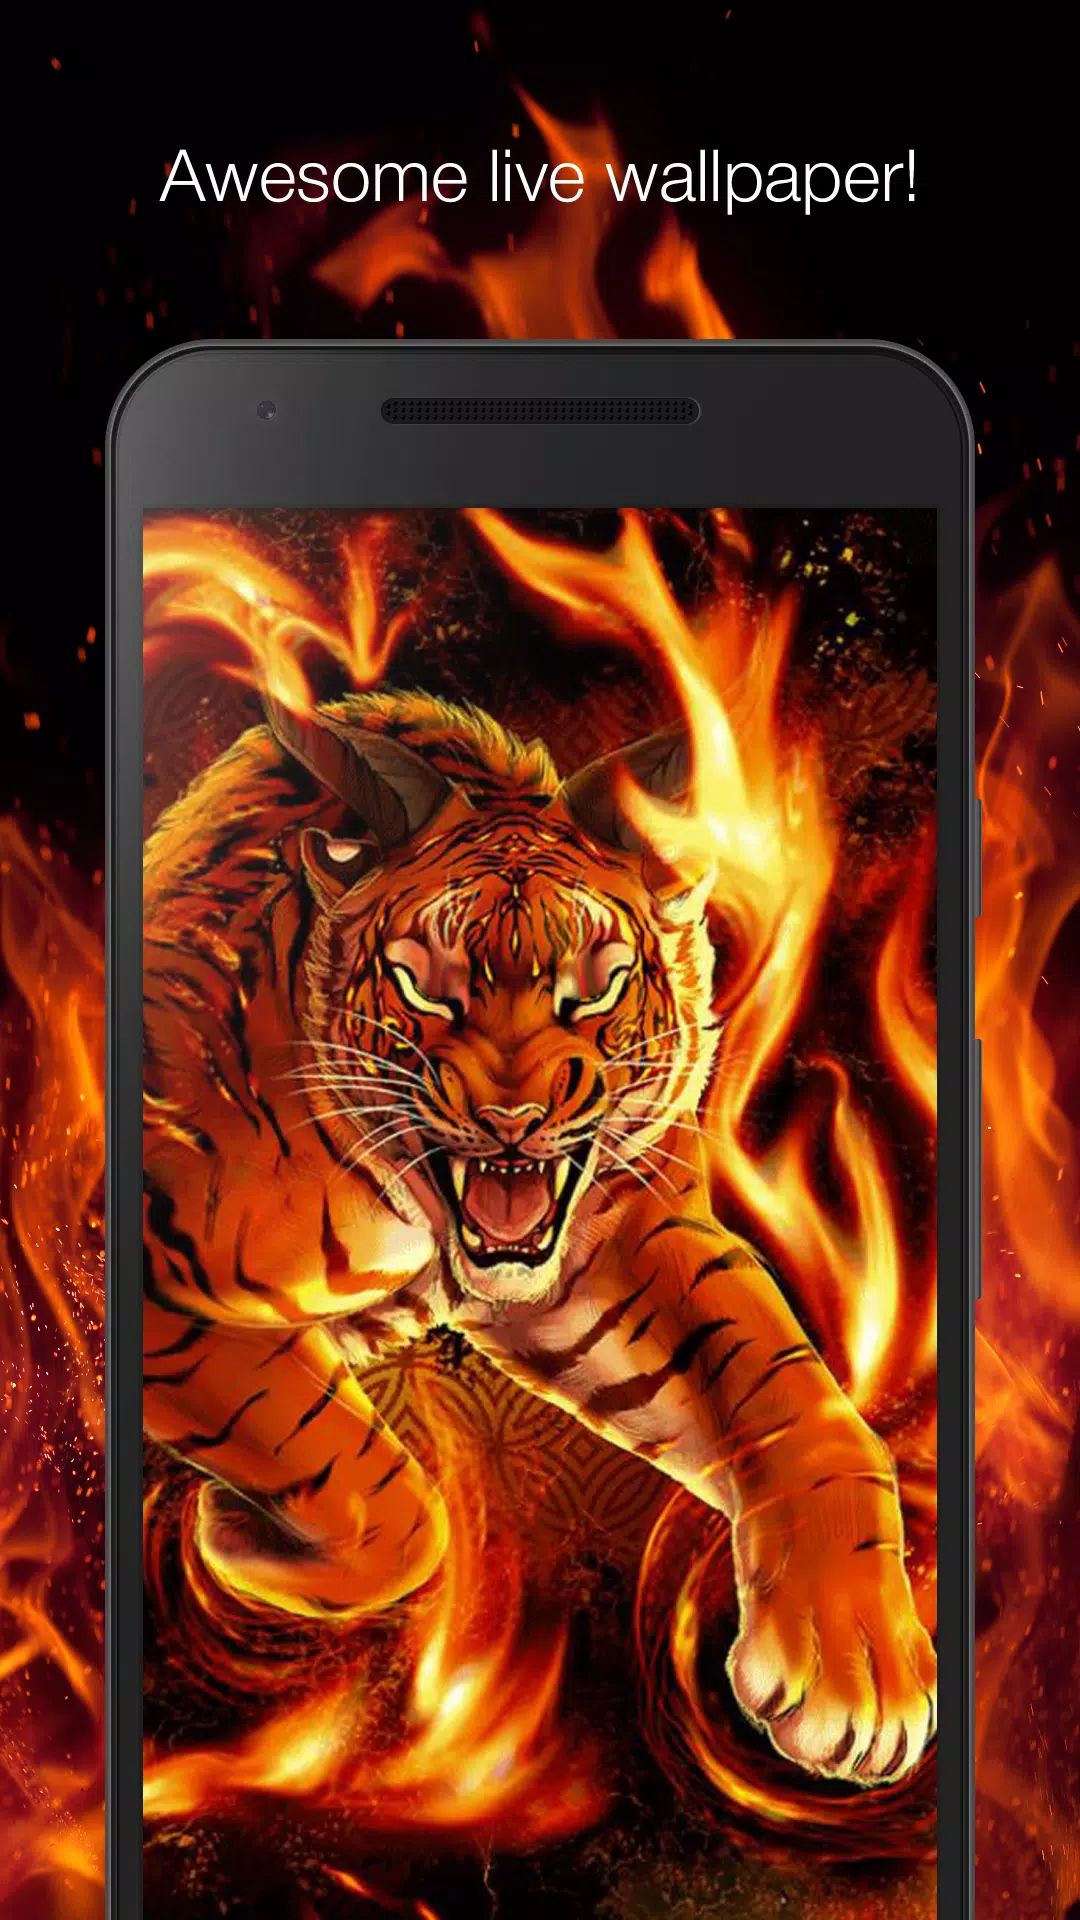 Cháy hết mình cùng với hình nền sống Tiger on fire live wallpaper APK nào! Hình ảnh hổ đang cháy lửa sẽ gợi lên cảm giác mãnh liệt, kiên cường, sự can trường và quyết đoán. Điều đó sẽ giúp bạn cảm thấy mạnh mẽ và tự tin hơn trong cuộc sống. Hãy nhanh chóng click vào hình để trải nghiệm những giây phút nóng bỏng này!